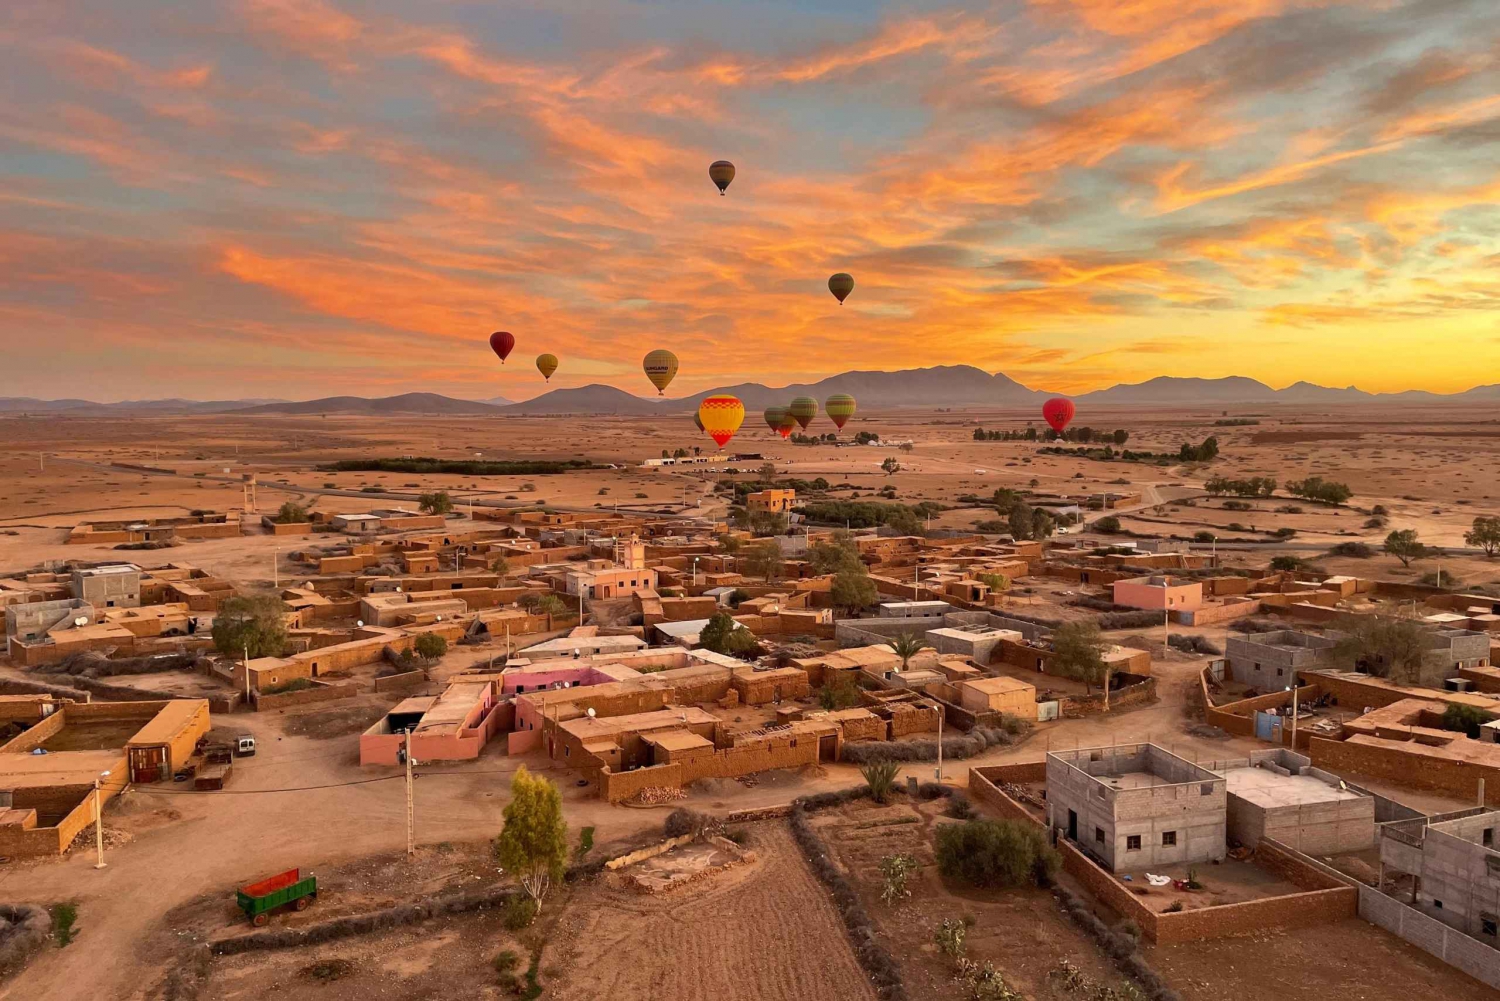 Marrakech: Sunrise Hot Air Balloon Flight